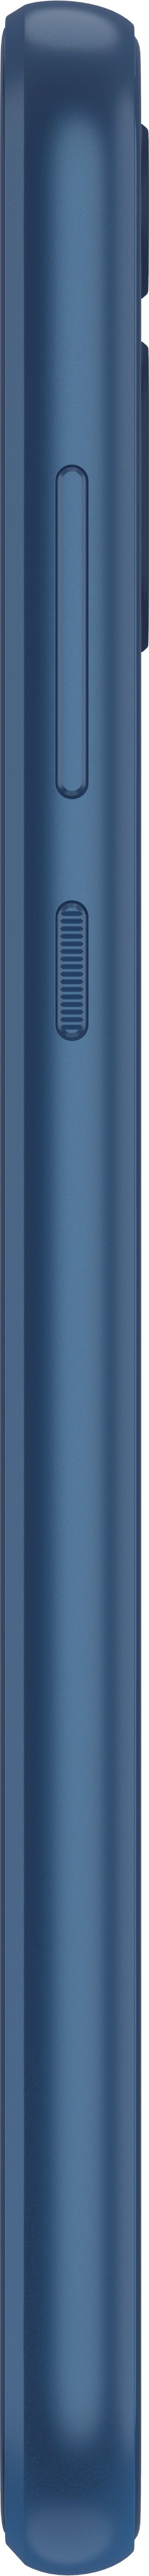 Motorola Moto E (2020)